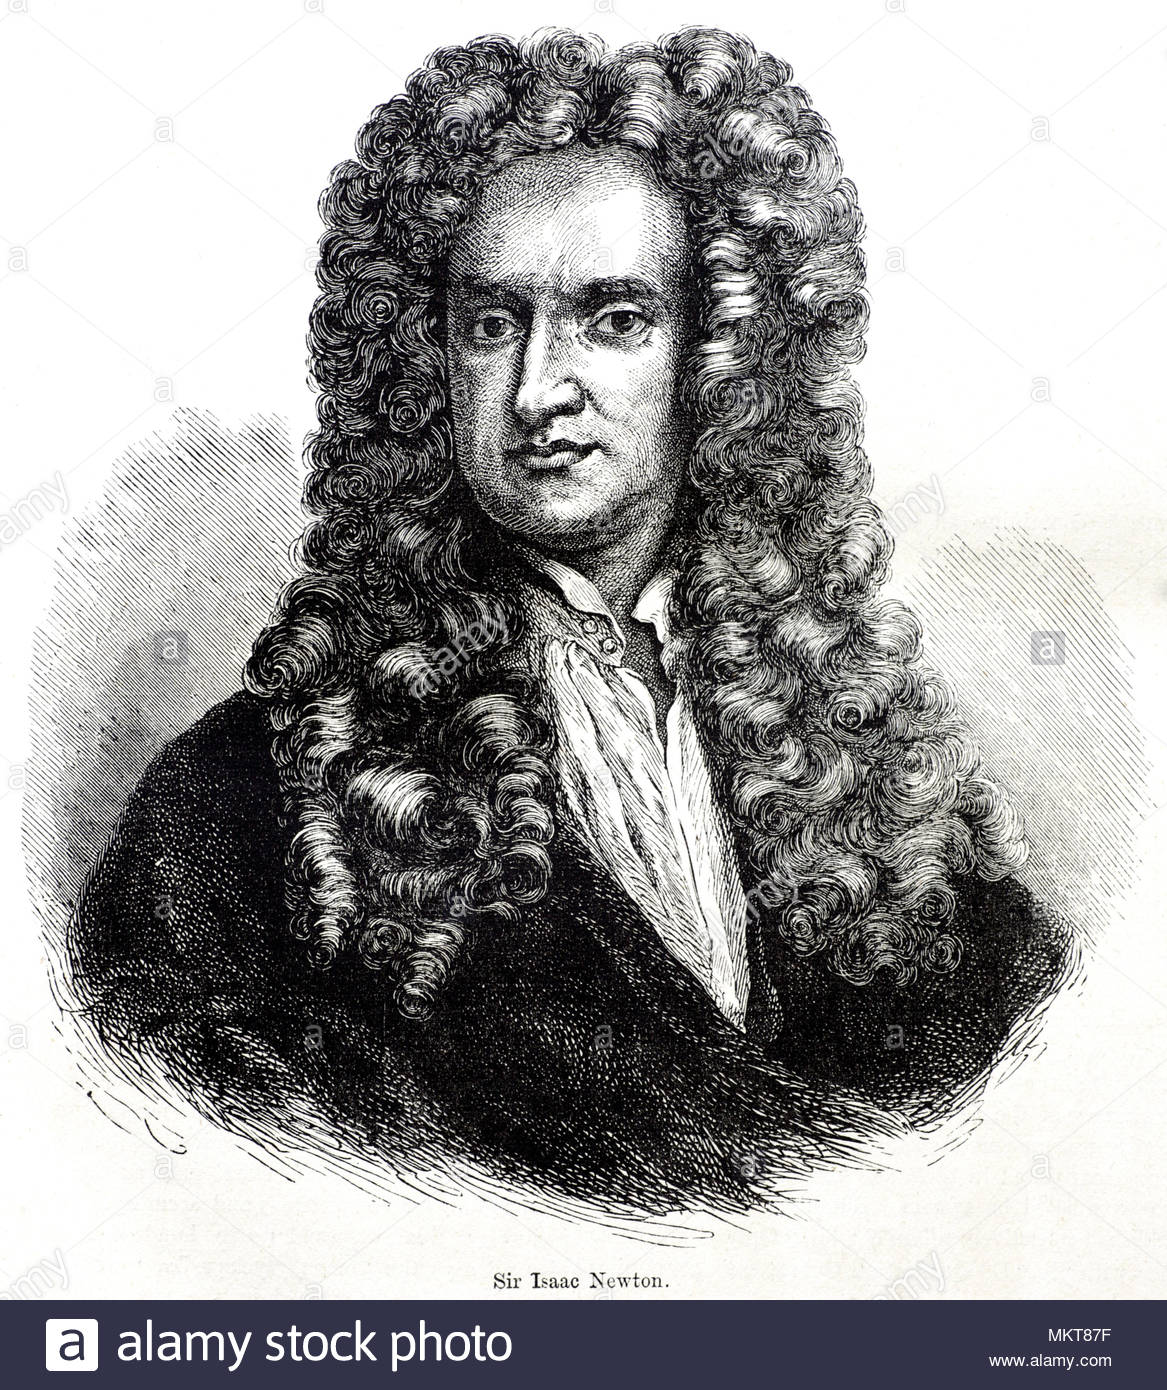 Sir Isaac Newton Porträt 1642 - 1726/27, war ein englischer Mathematiker, Astronom, Theologe, Autor und Physiker, der weithin als einer der einflussreichsten Wissenschaftler aller Zeiten erkannt wird, und eine zentrale Figur in der wissenschaftlichen Revolution, antike Darstellung von ca. 1880 Stockfoto